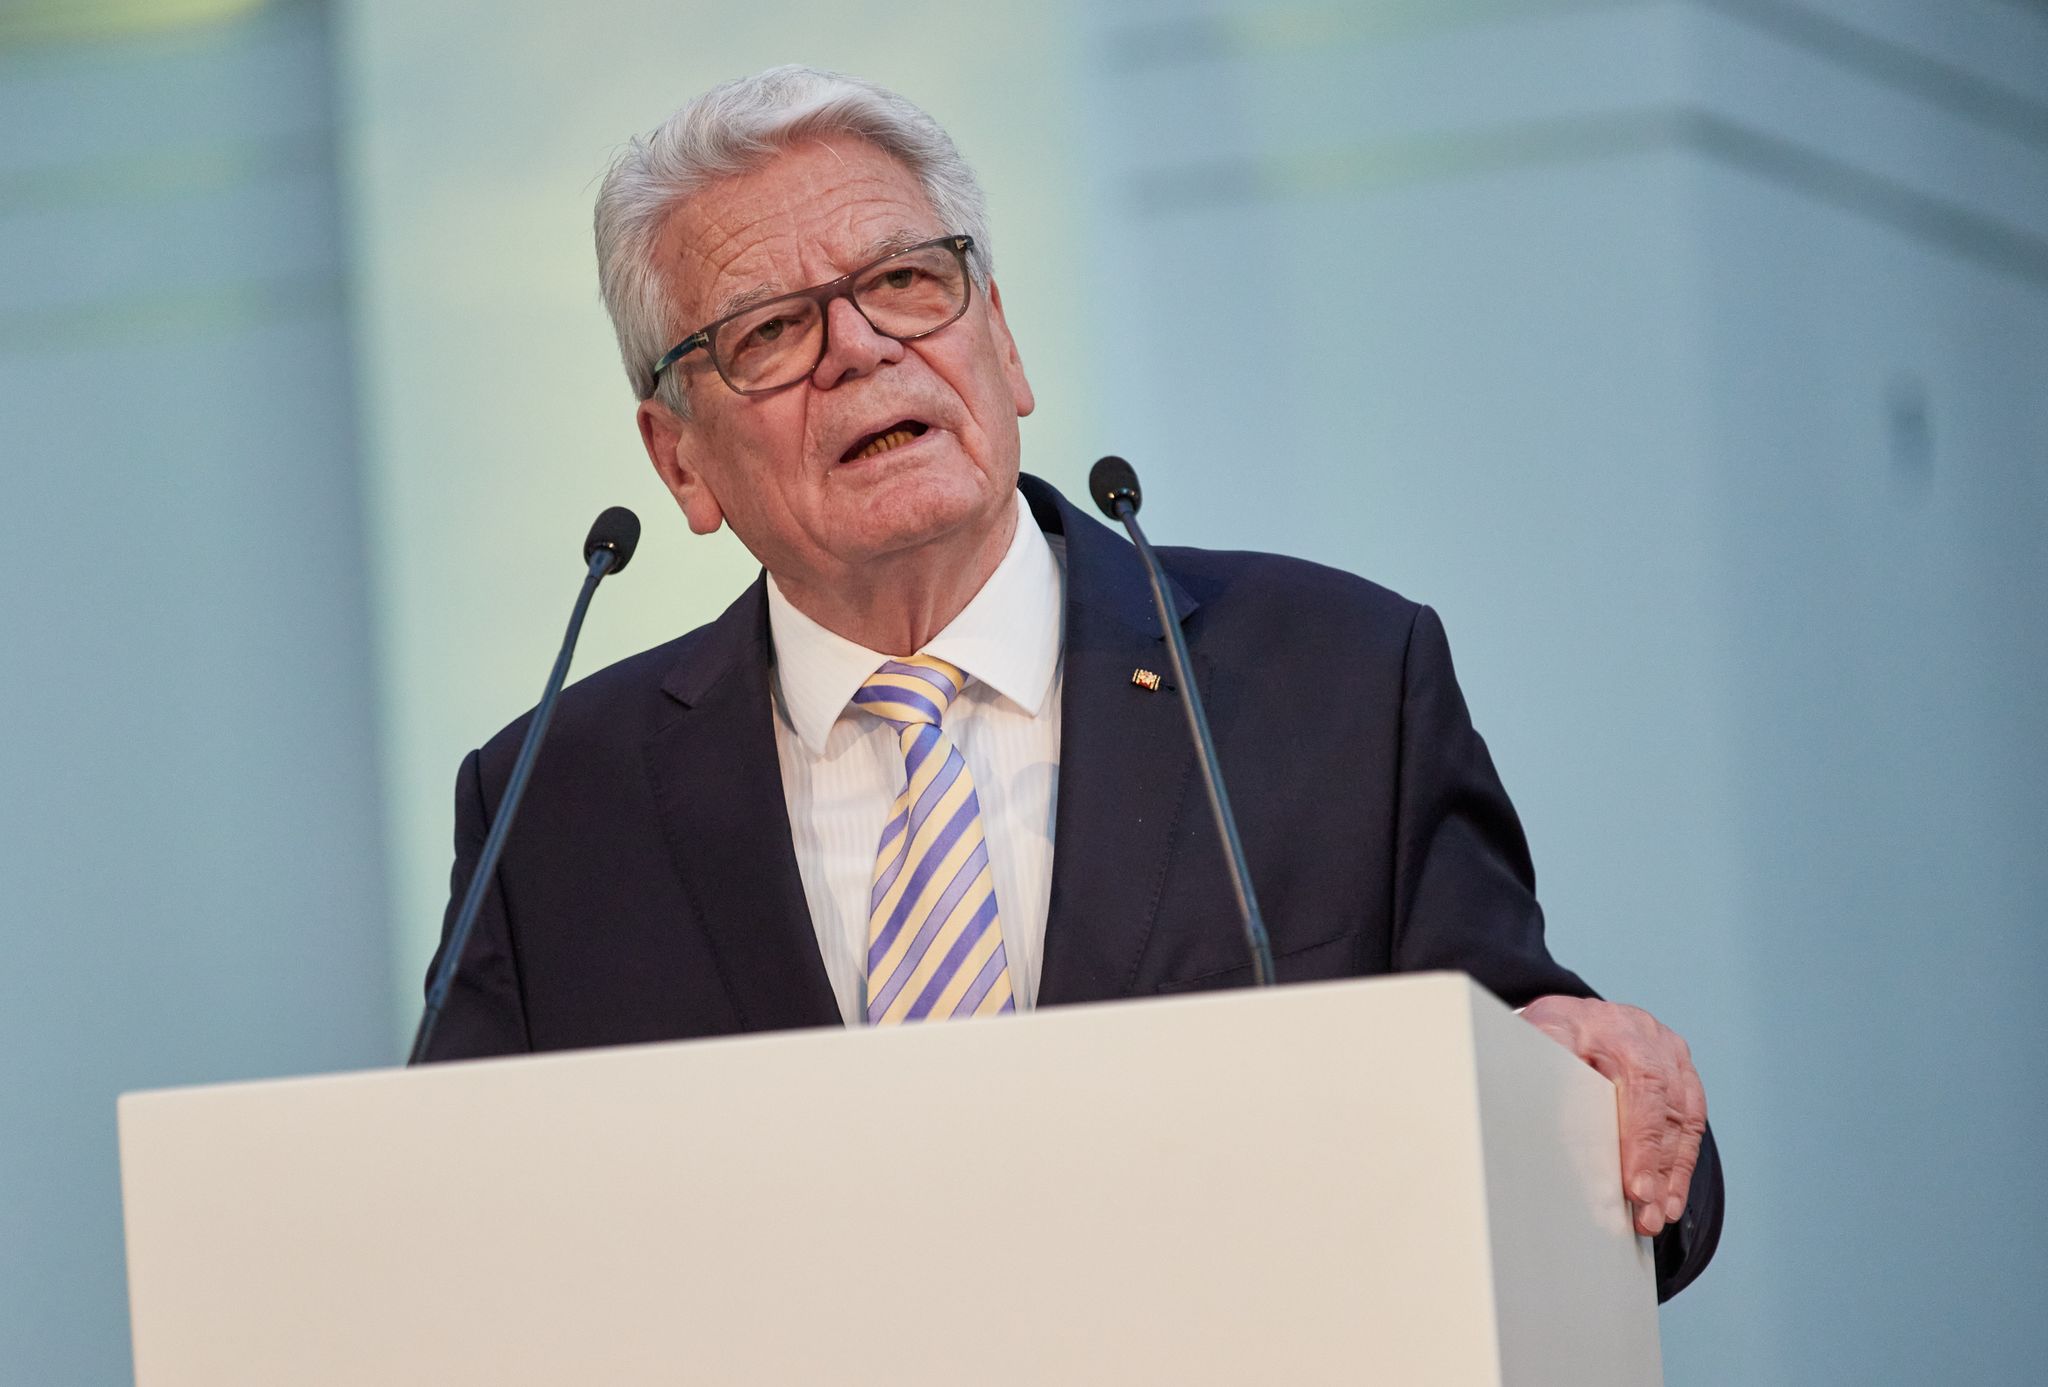 Joachim Gauck, ehemaliger Bundespräsident, spricht bei einer Veranstaltung.